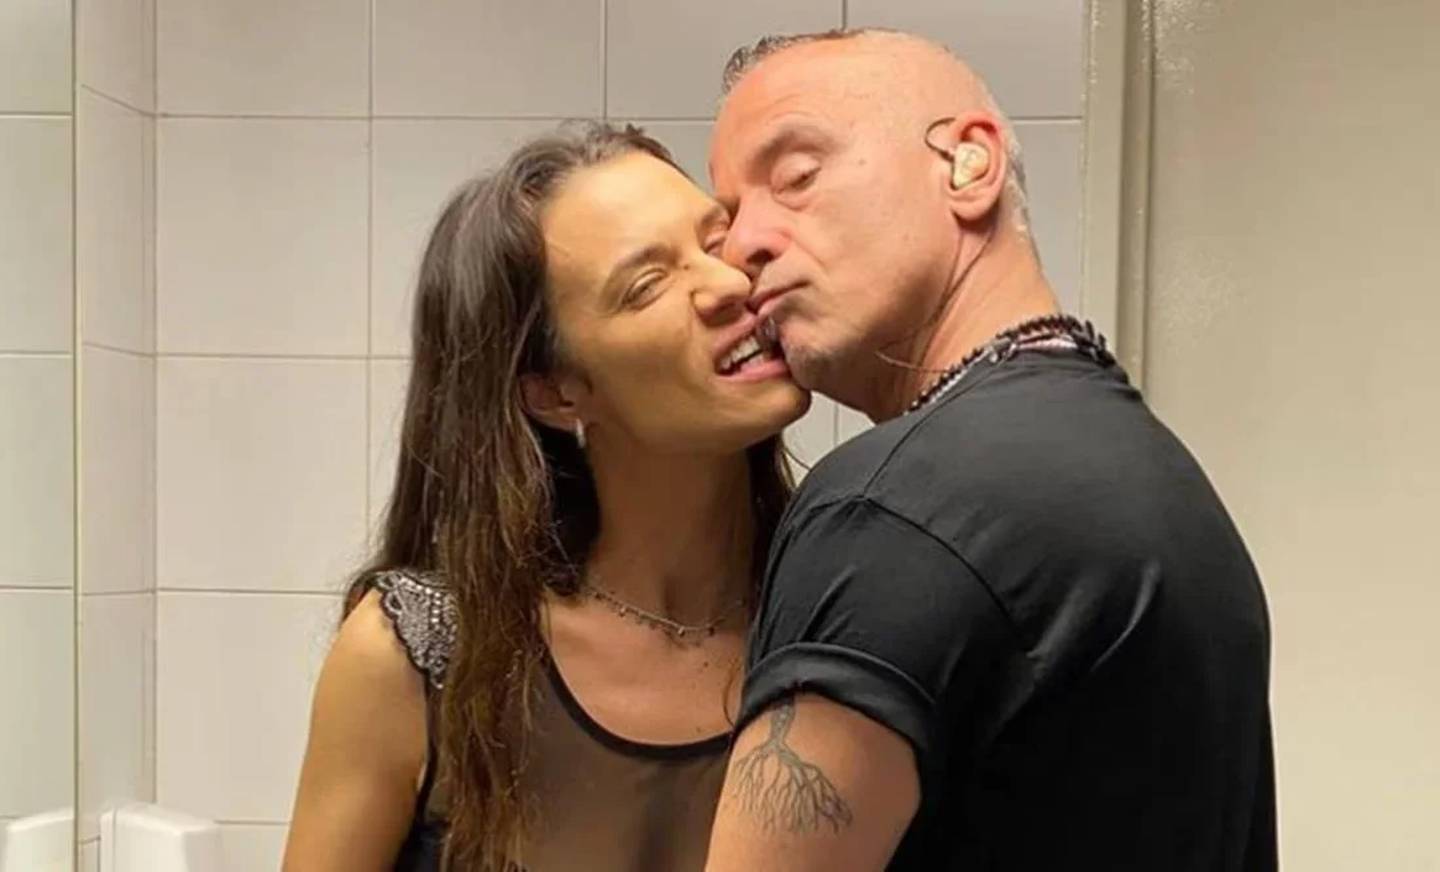 Eros Ramazzotti y nueva novia, quien es 25 años menor que él. Pareja presume su amor en Instagram